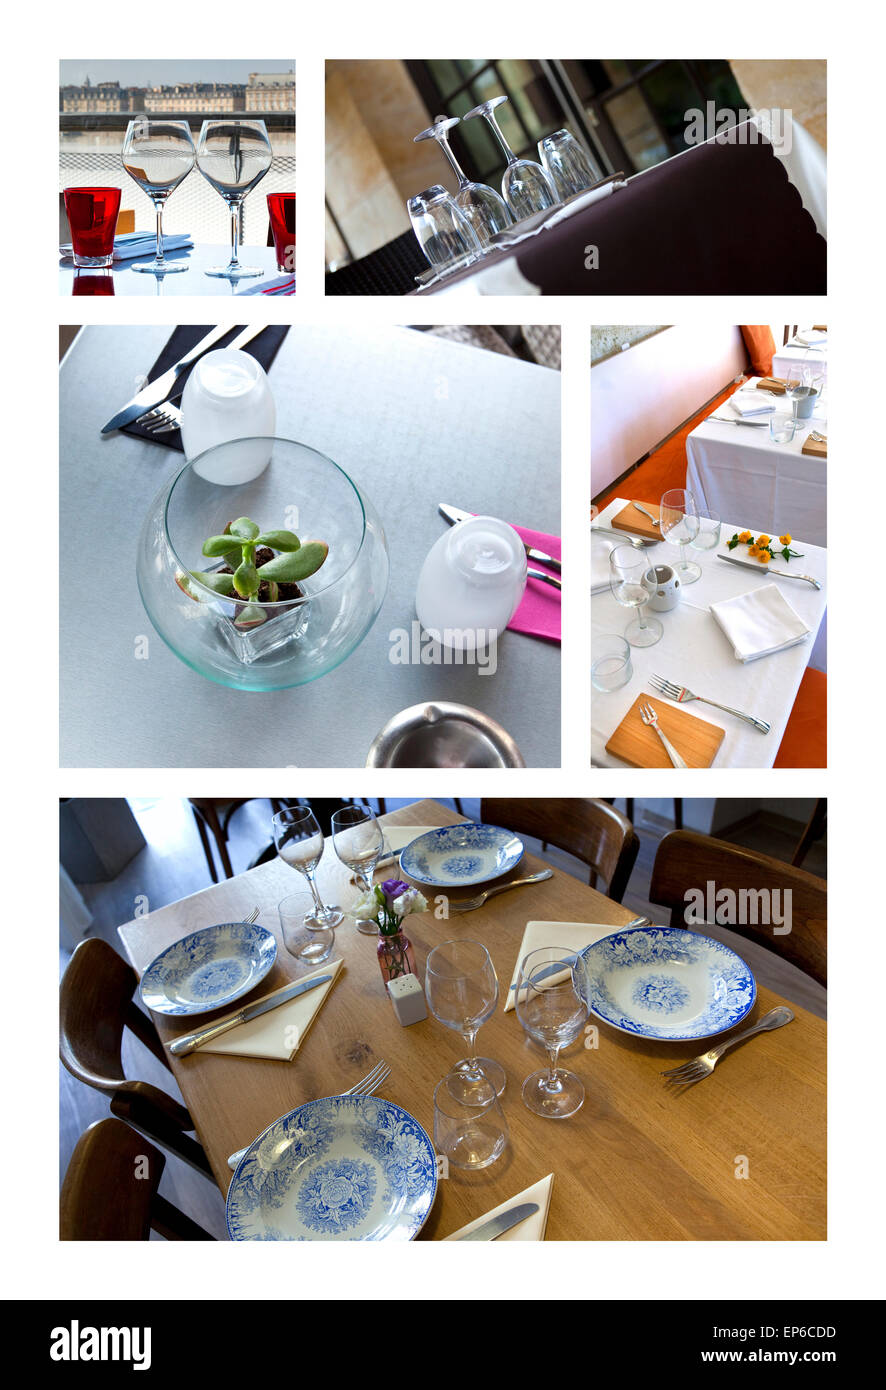 Ensembles table et un collage sur restaurants Français Banque D'Images